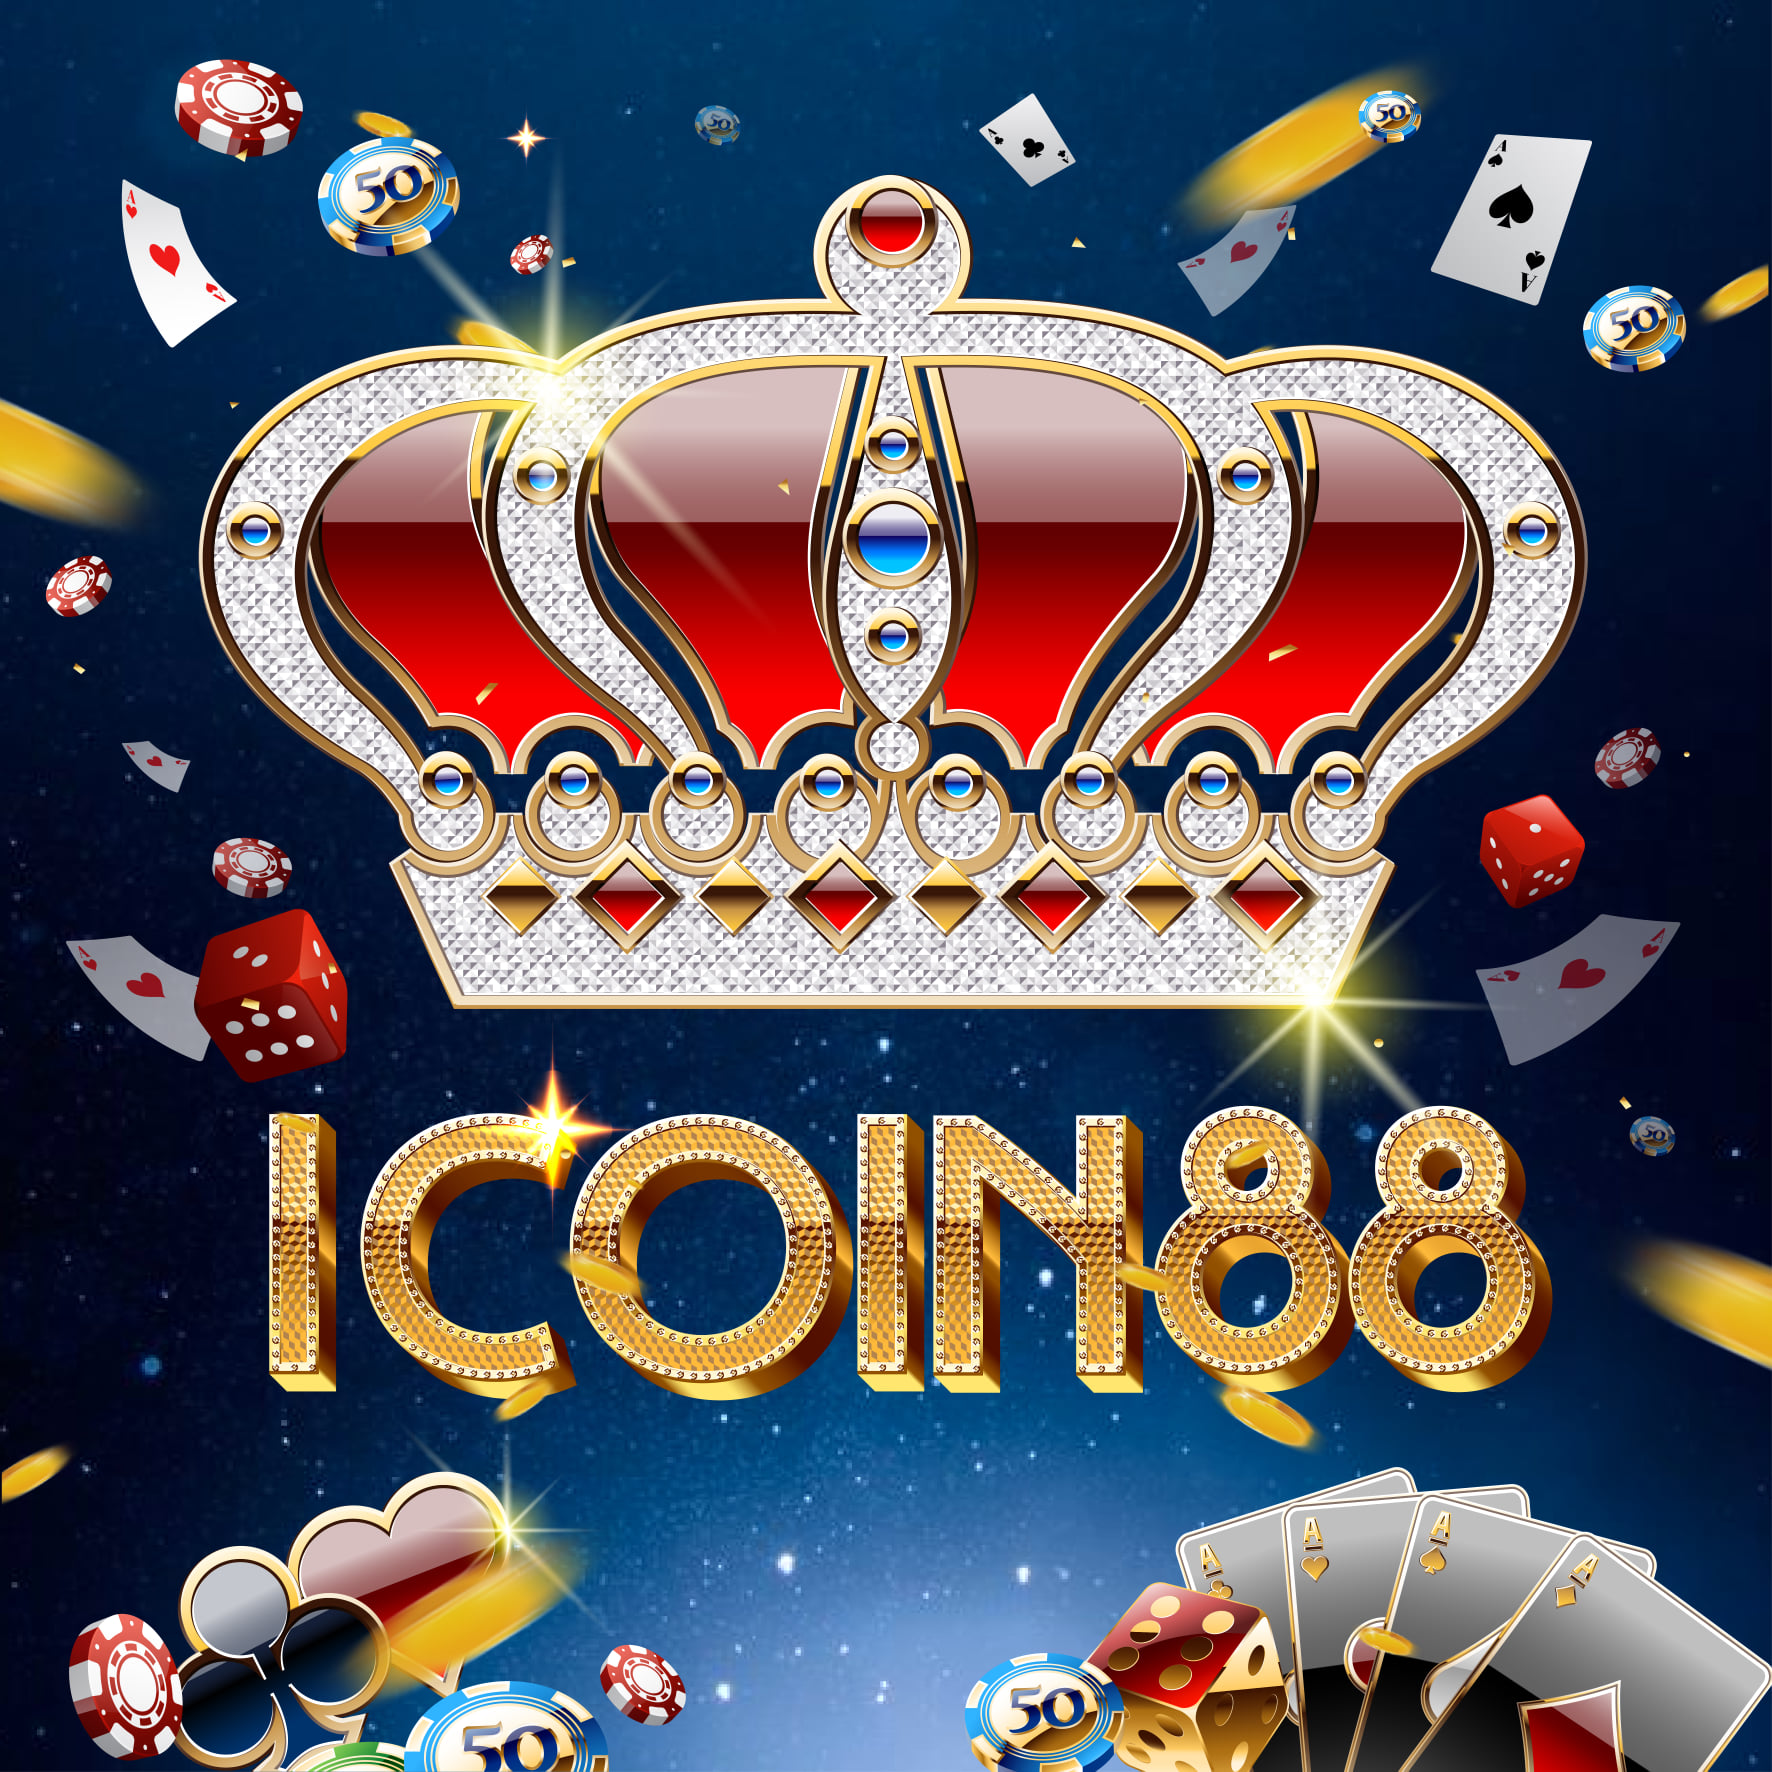 iCoin88 – Làn gió mới trong game bài đổi thưởng